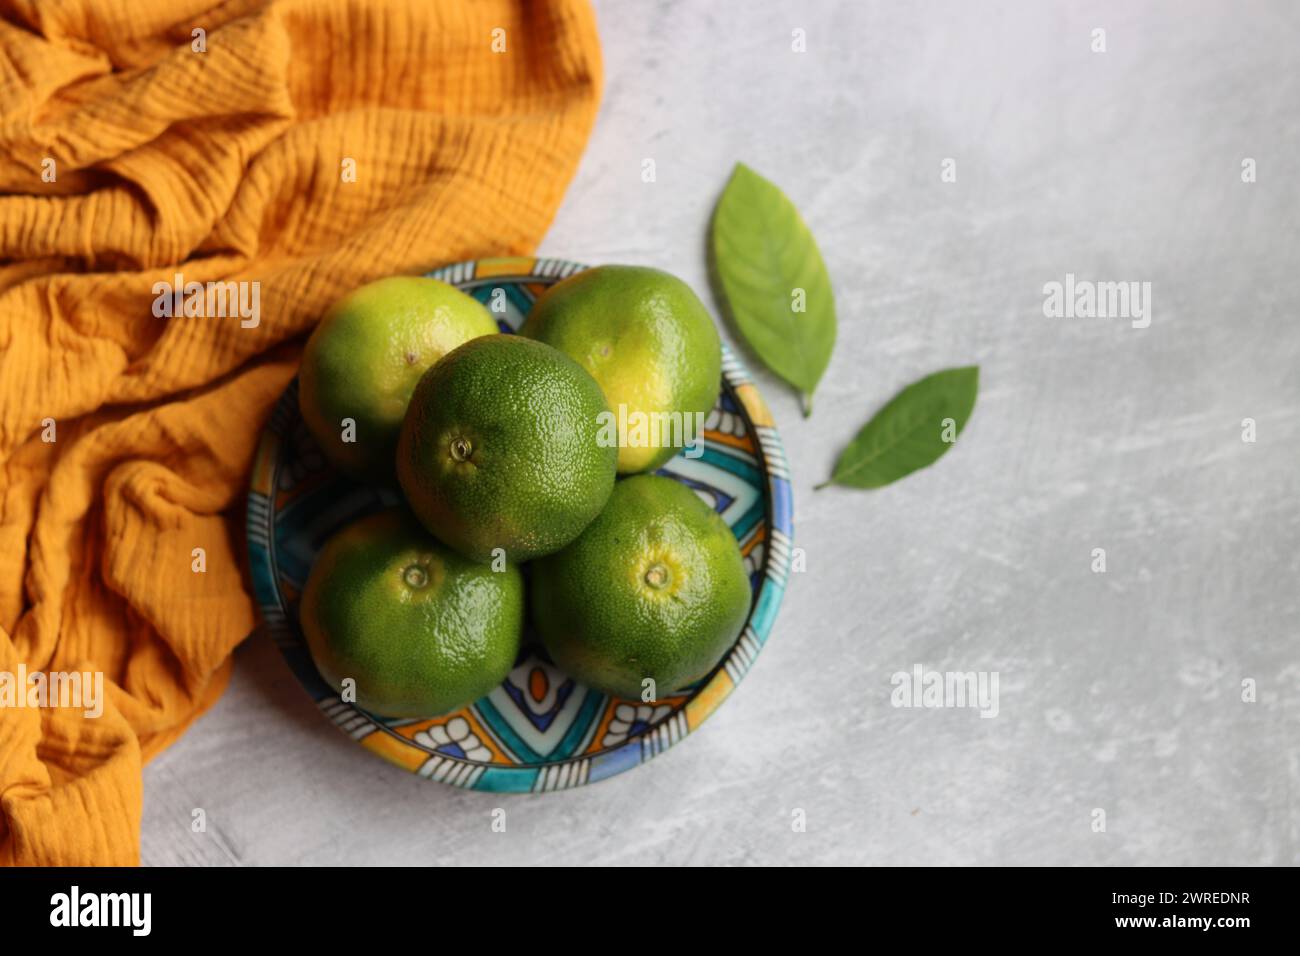 Compositions simples encore de la vie avec des citrons verts sur une plaque de céramique bleue. Fond gris clair avec espace pour le texte. Concept d'alimentation saine. Banque D'Images